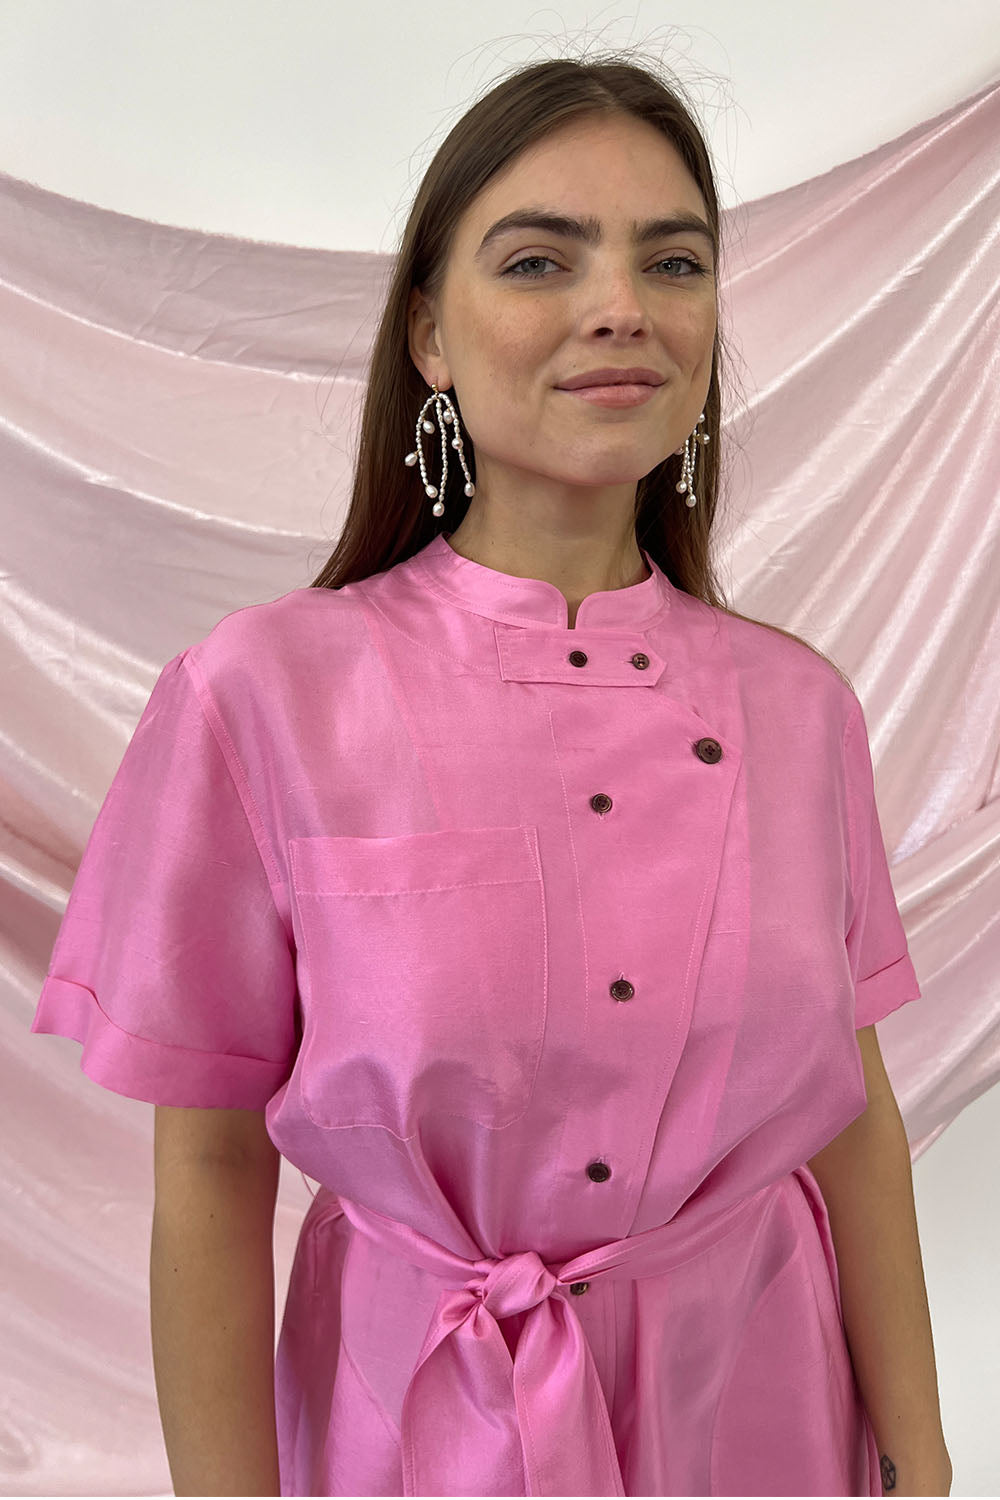 Soeur - Sardaign Dress: Pink Silk